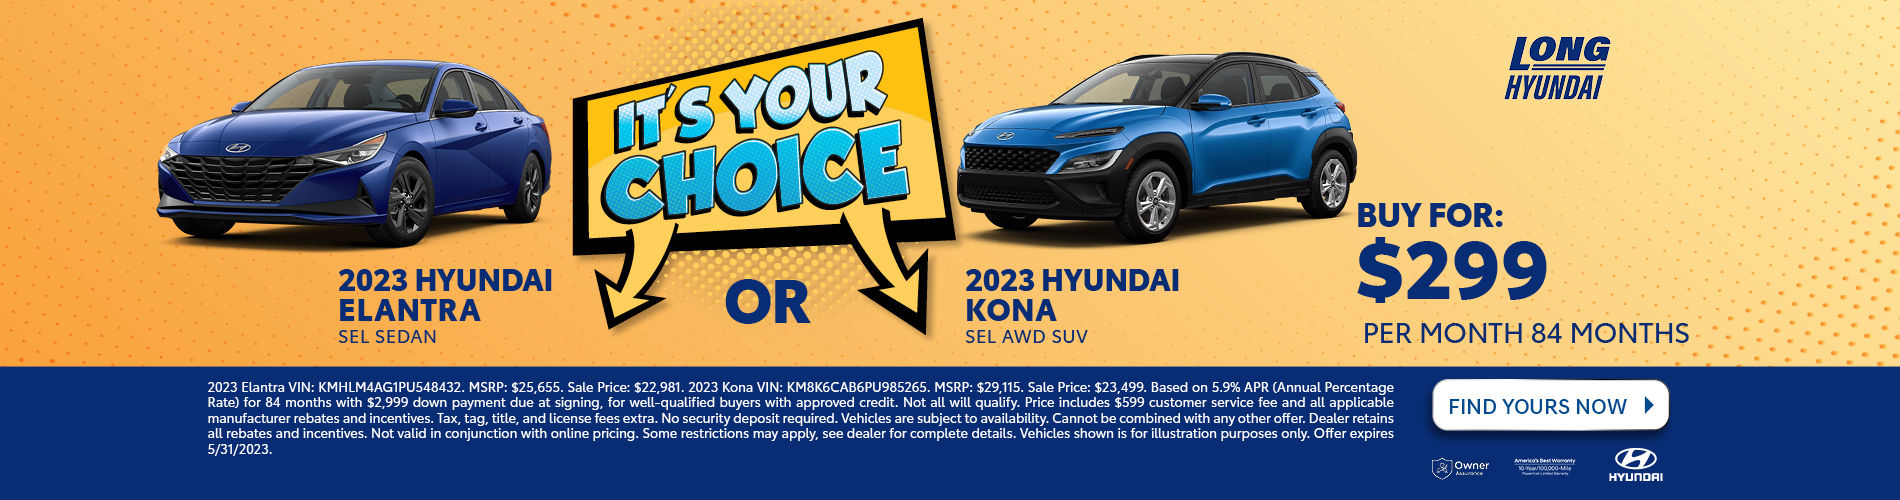 2023 Hyundai Elantra OR 2023 Hyundai Kona